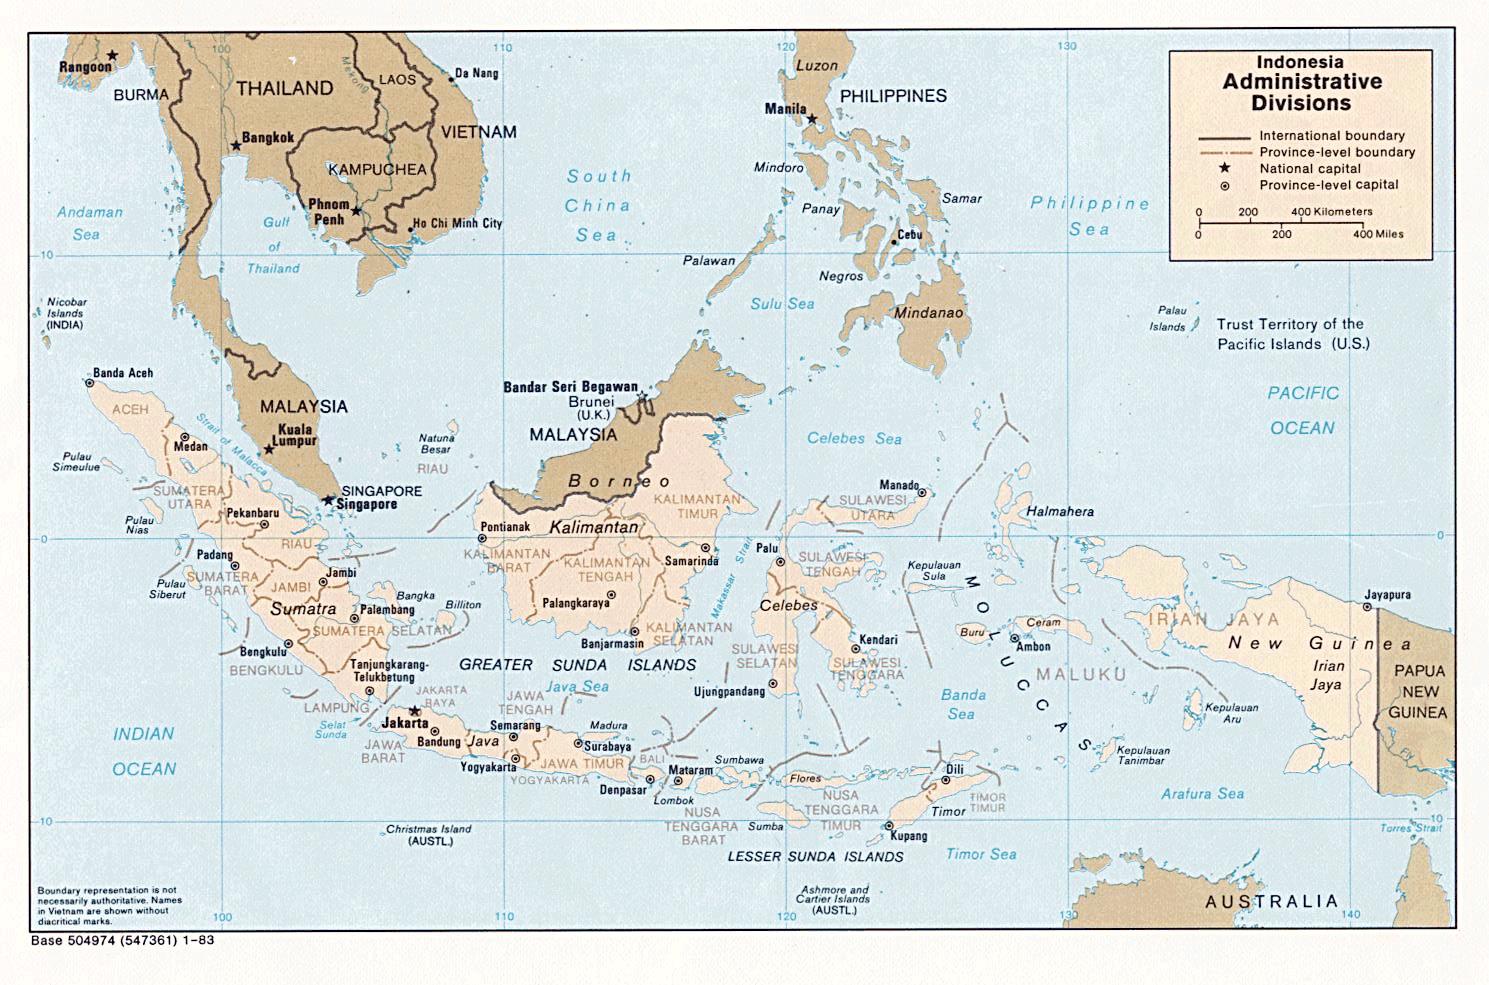 Fakta : Populasi Industri terbesar ada di Jawa populasi penduduk terbesar ada di Jawa, berasal dari semua suku bangsa yang ada di Indonesia Jumlah pulau = 17.504, suku bangsa = 1.